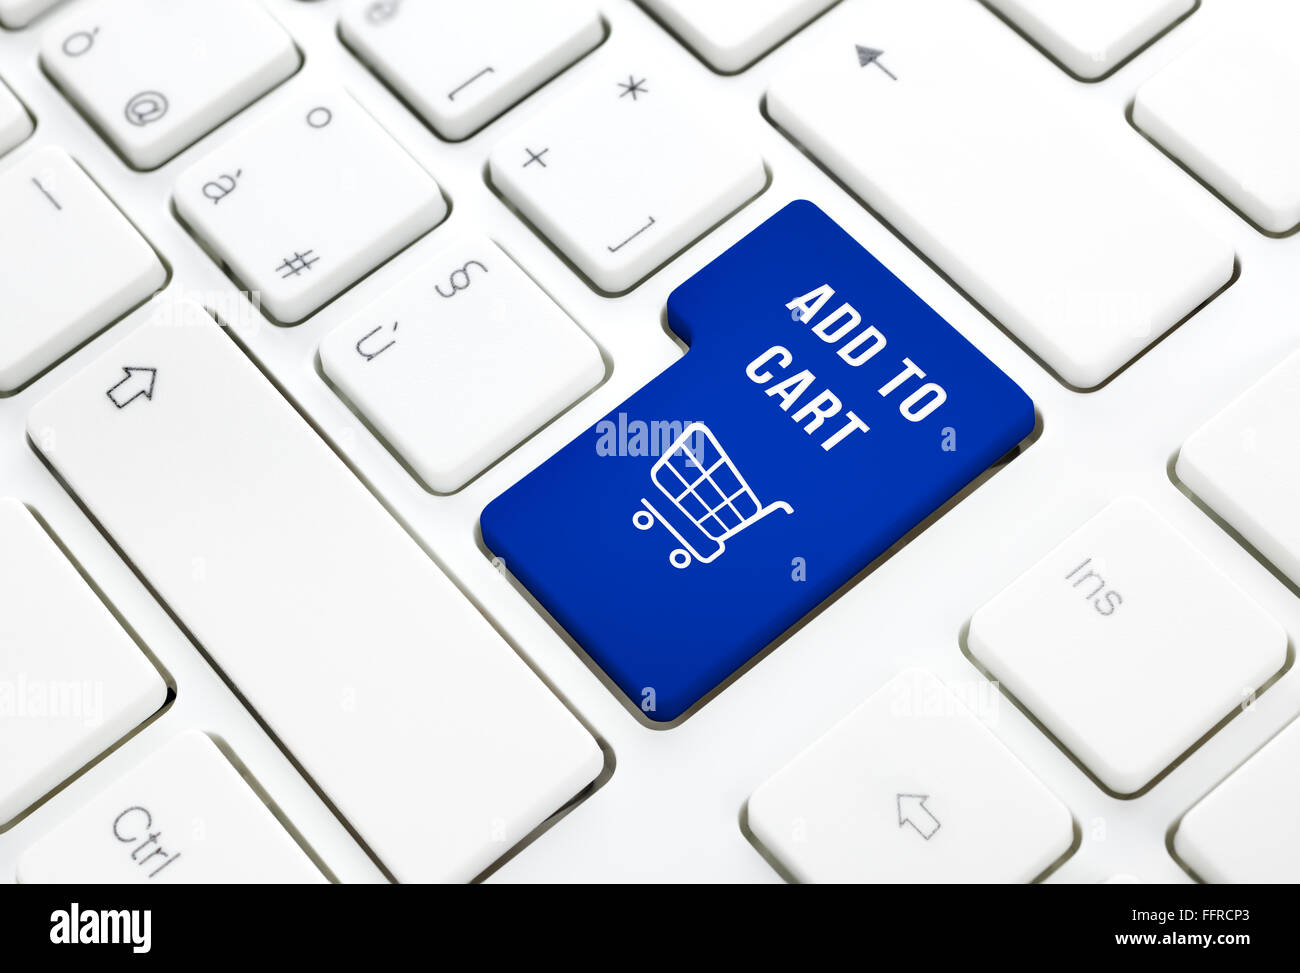 Online-Shop hinzufügen Warenkorb Geschäftskonzept, blauen Warenkorb-Button oder Schlüssel auf die weiße Tastatur Fotografie. Stockfoto